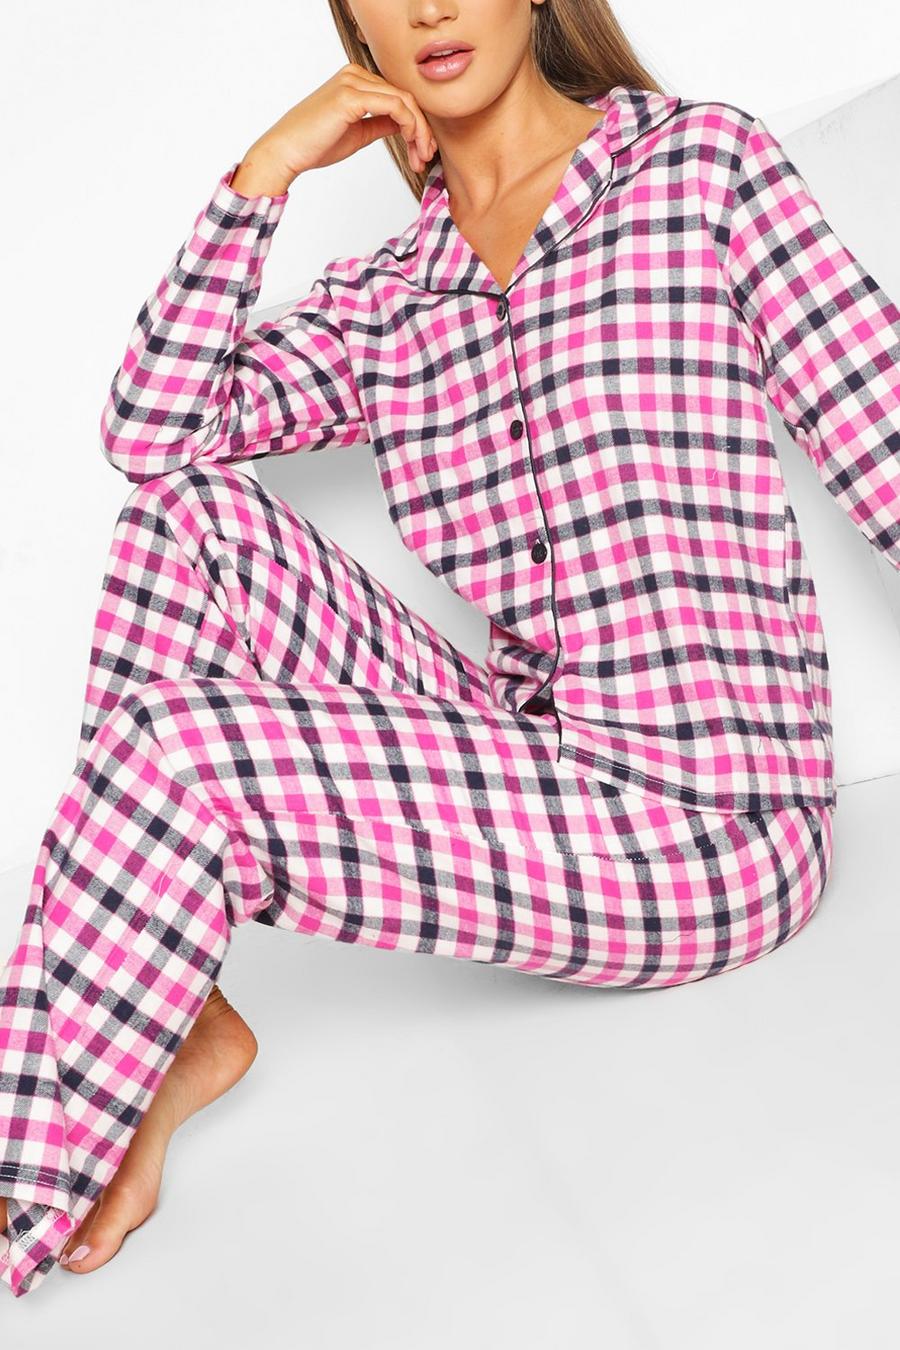 Flannel Check PJ Trouser Set image number 1